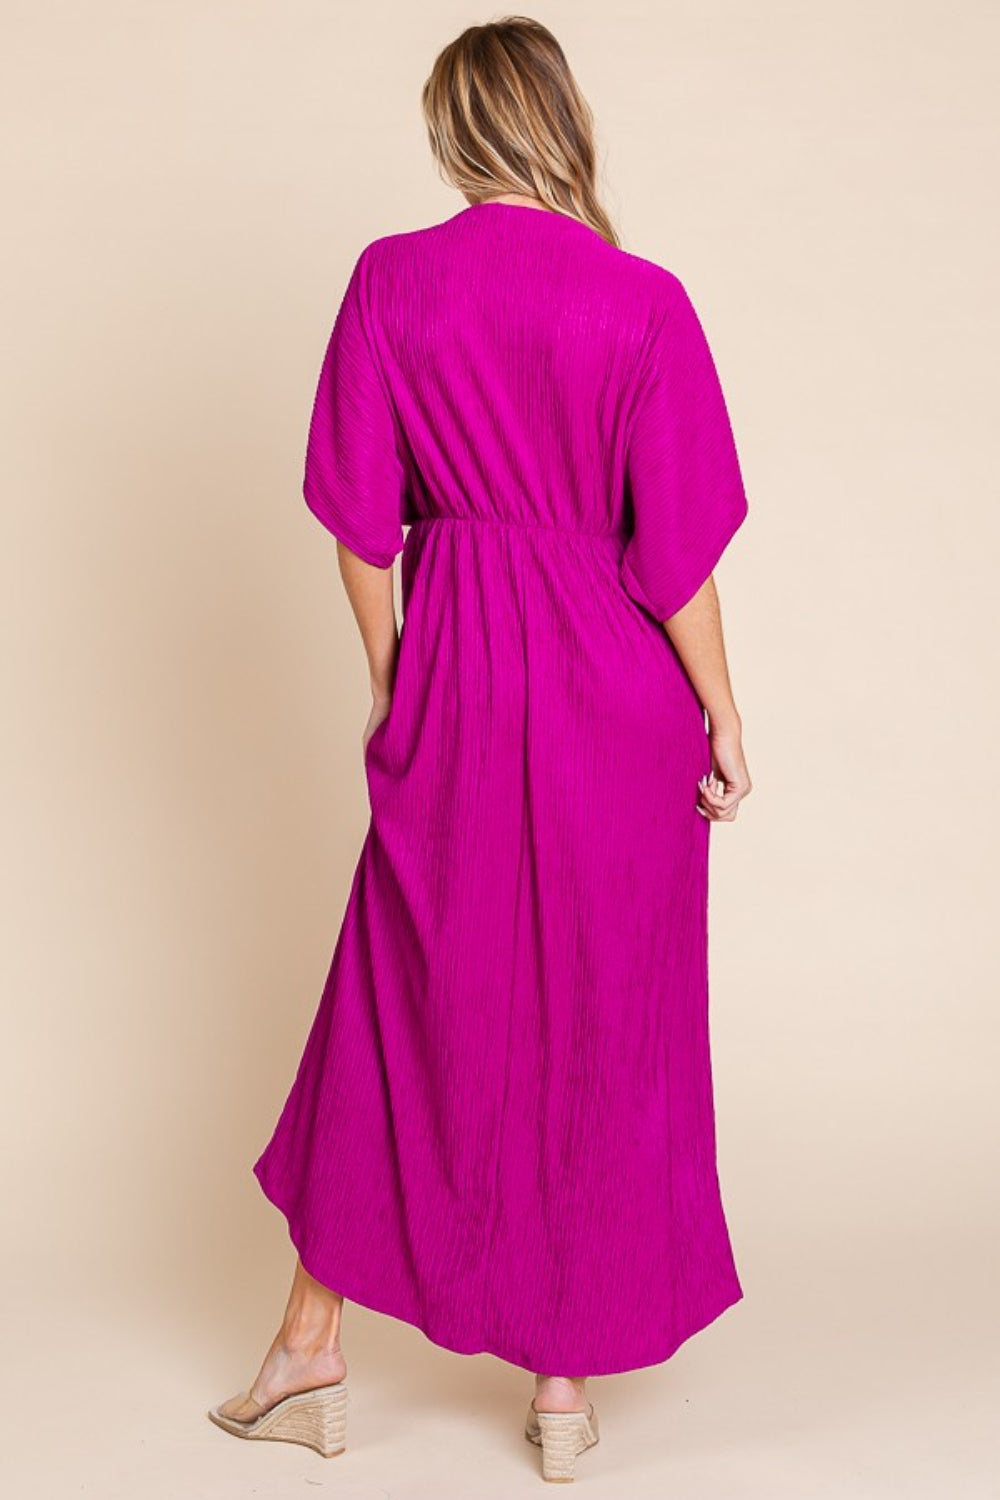 V-Neck Dolman Sleeve Maxi Dress with Pockets